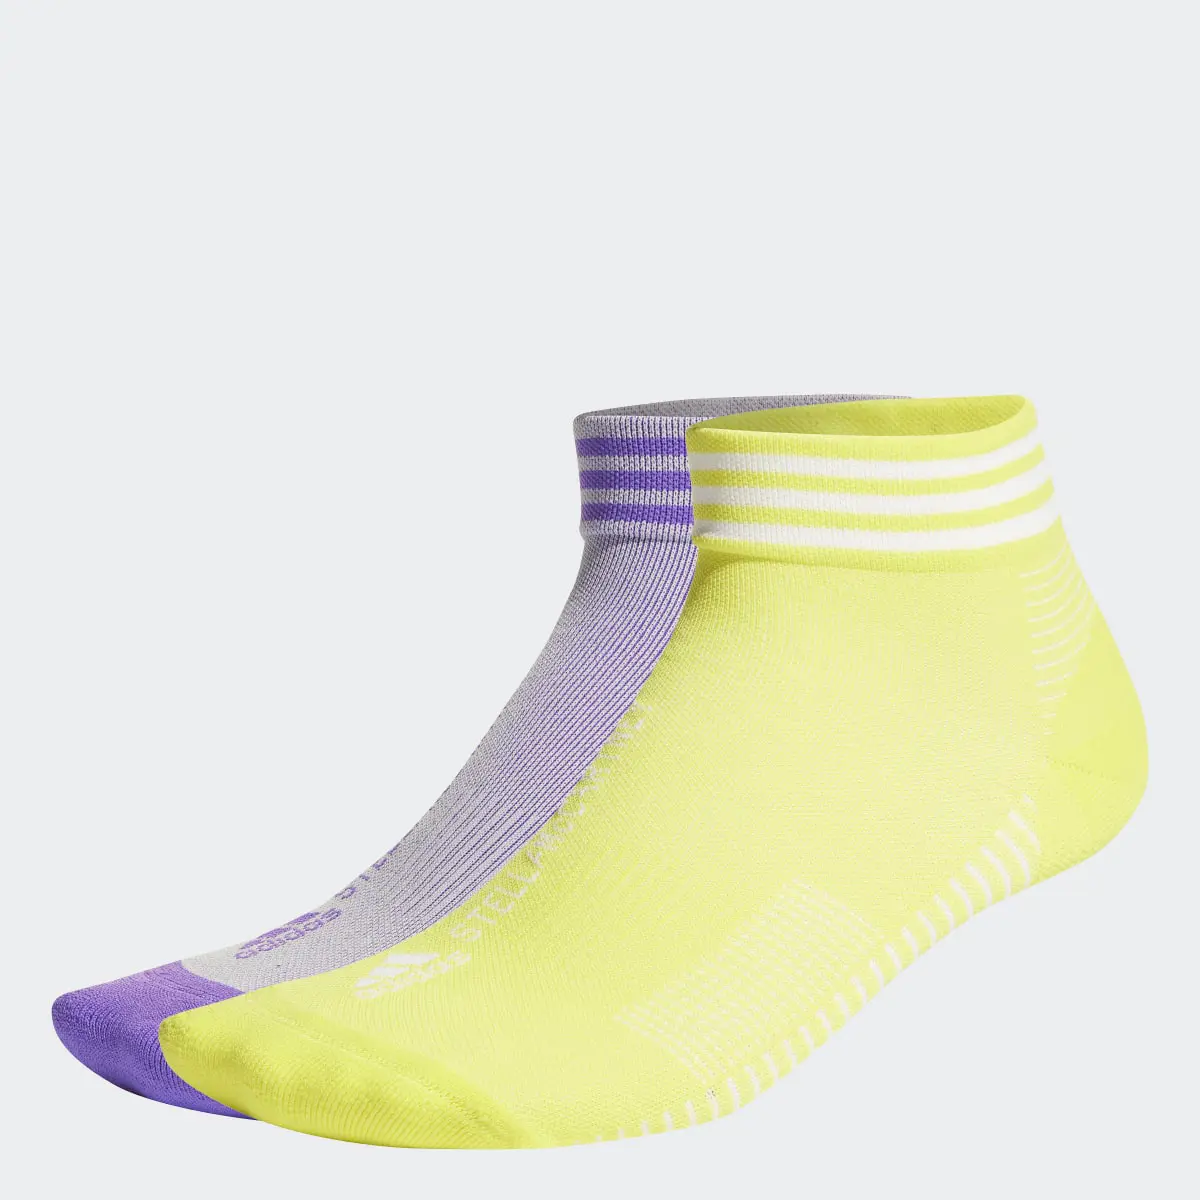 Adidas by Stella McCartney Low Socken, 2 Paar. 1